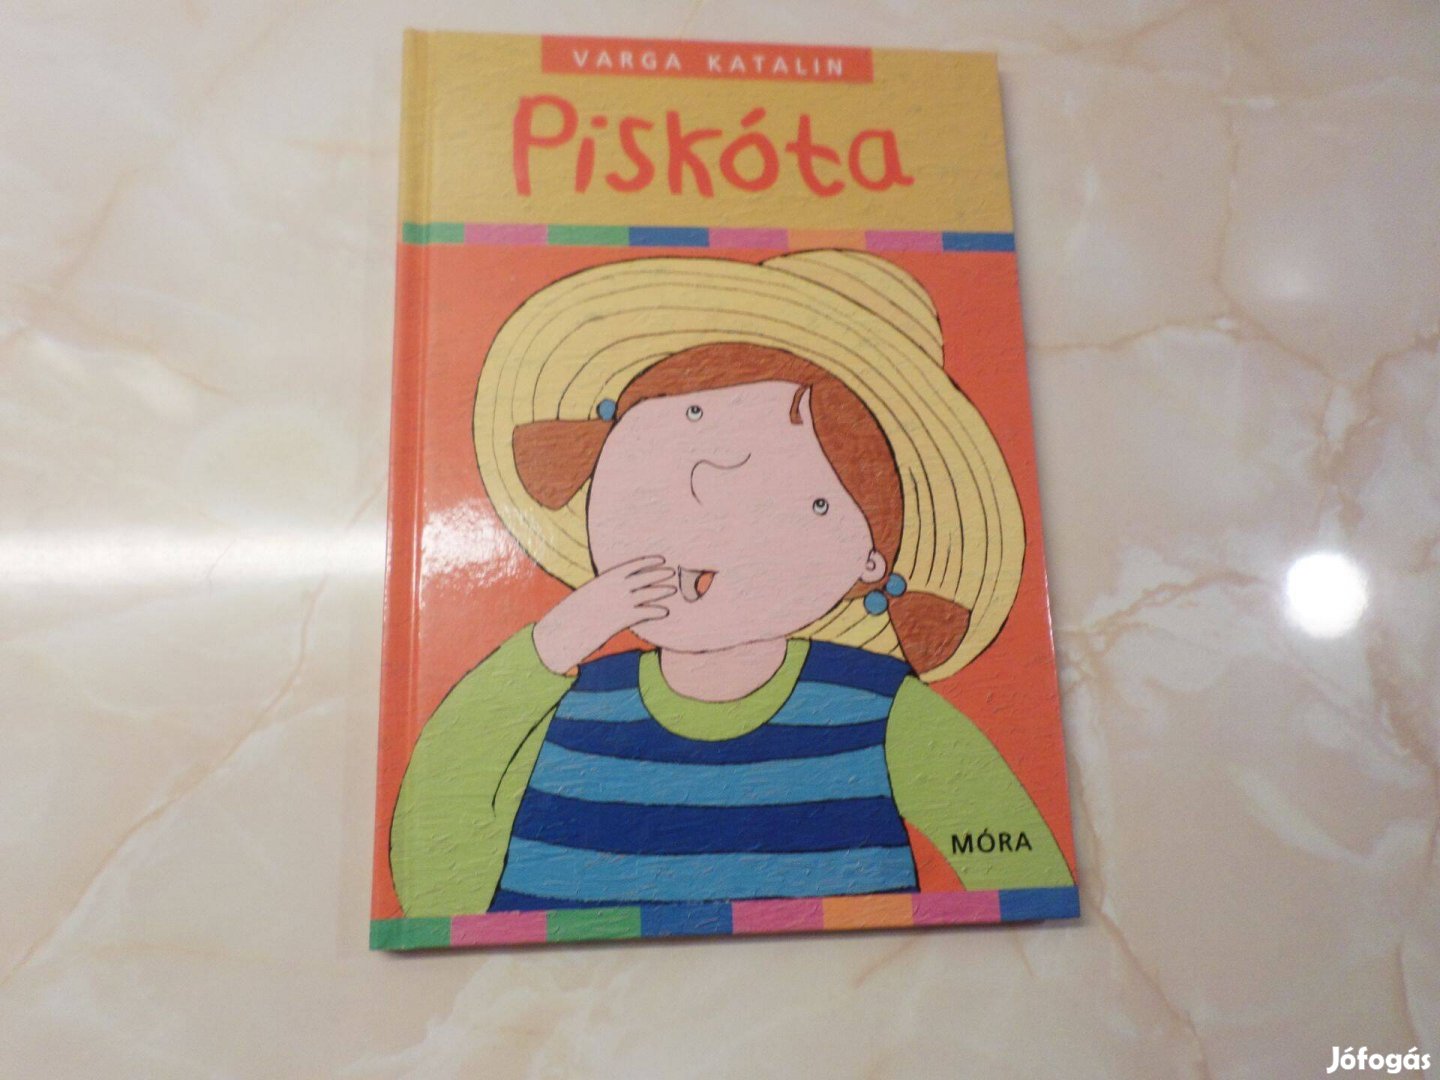 Varga Katalin Piskóta, 2007 Gyermekkönyv, meséskönyv